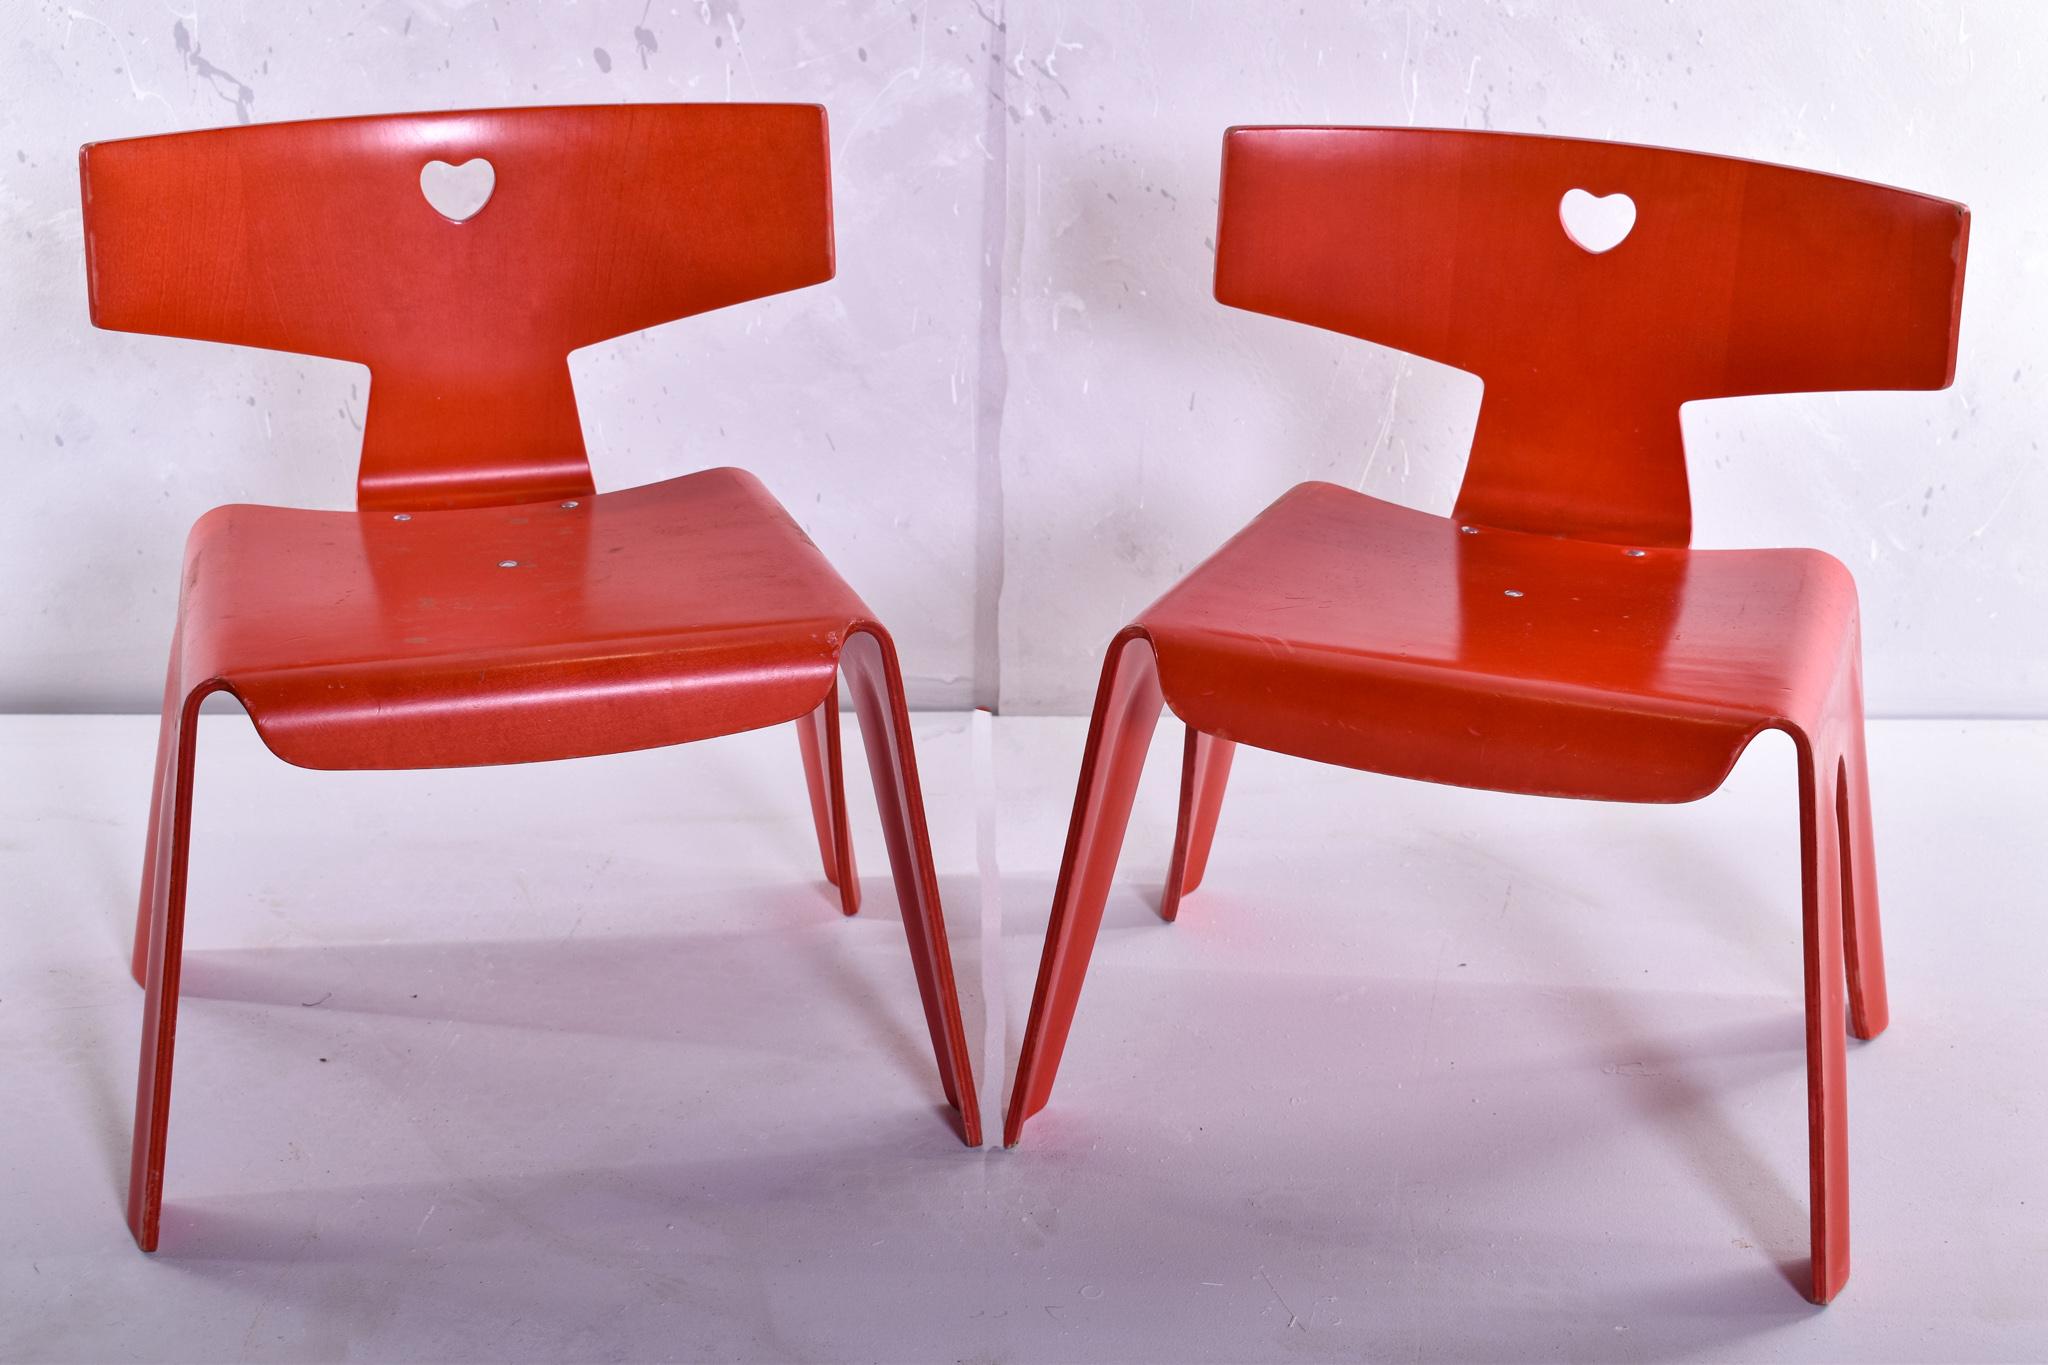 Fantastisches und seltenes Paar Kinderstühle von Charles und Ray Eames, ursprünglich 1945 entworfen. Elegante Konstruktion aus formgepresstem Birkenholz, fein durchbrochene Rückenlehnen mit Herzmotiven, in leuchtendem Rot gefärbt, mit applizierter